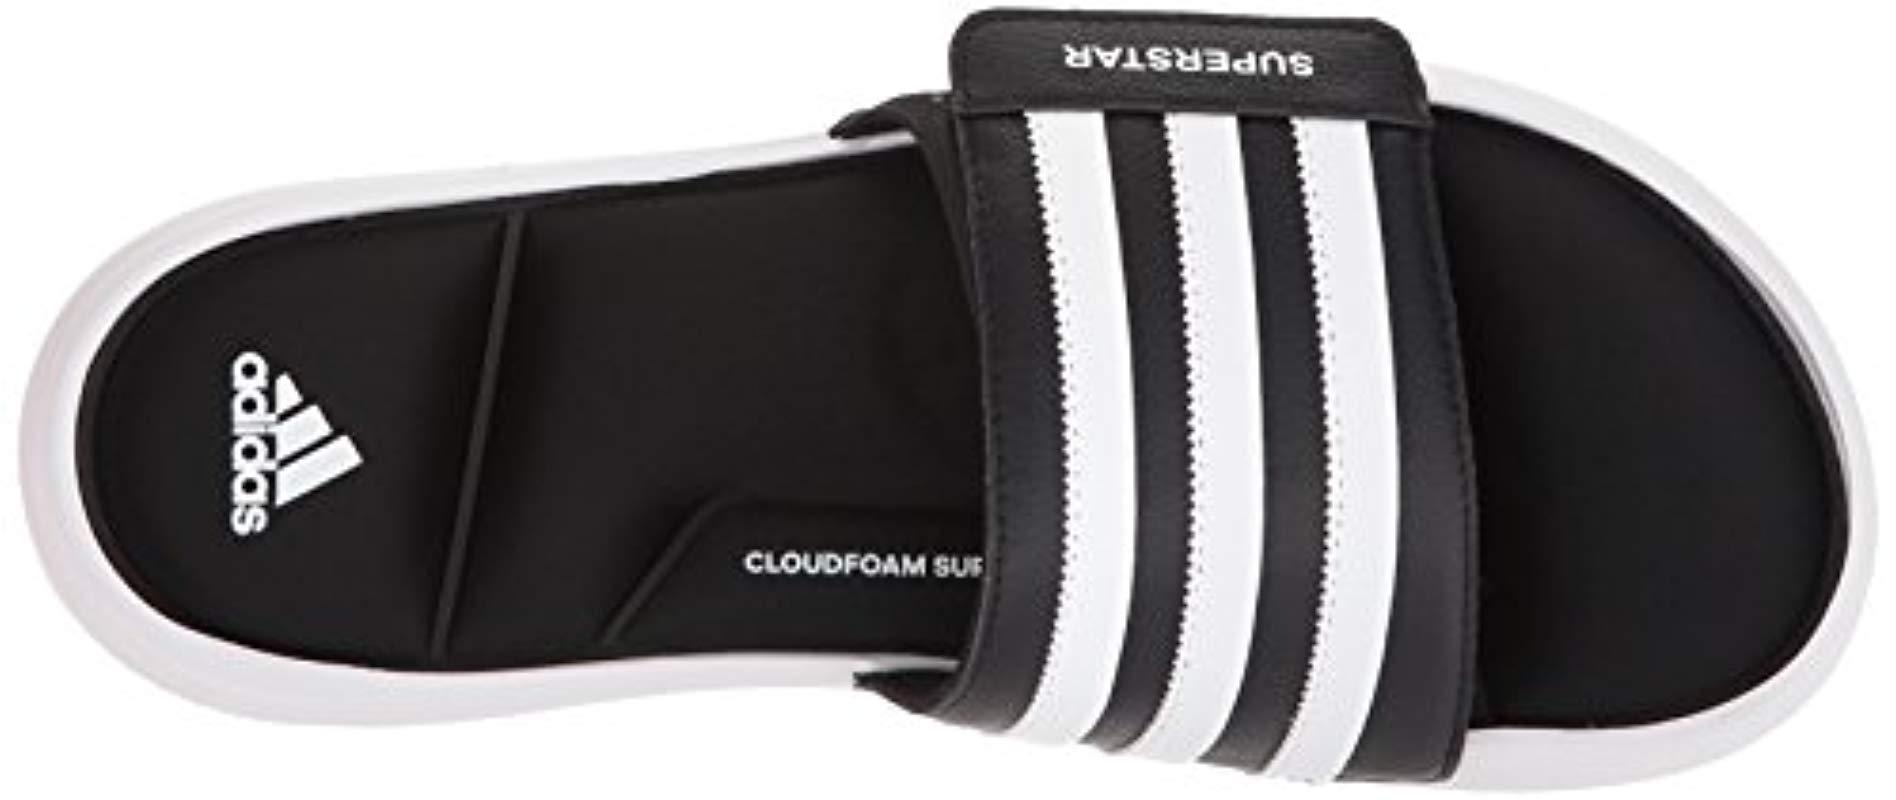 adidas Synthetic Superstar 5g Slide Sandal in Black/White/Black (Black) for  Men - Lyst